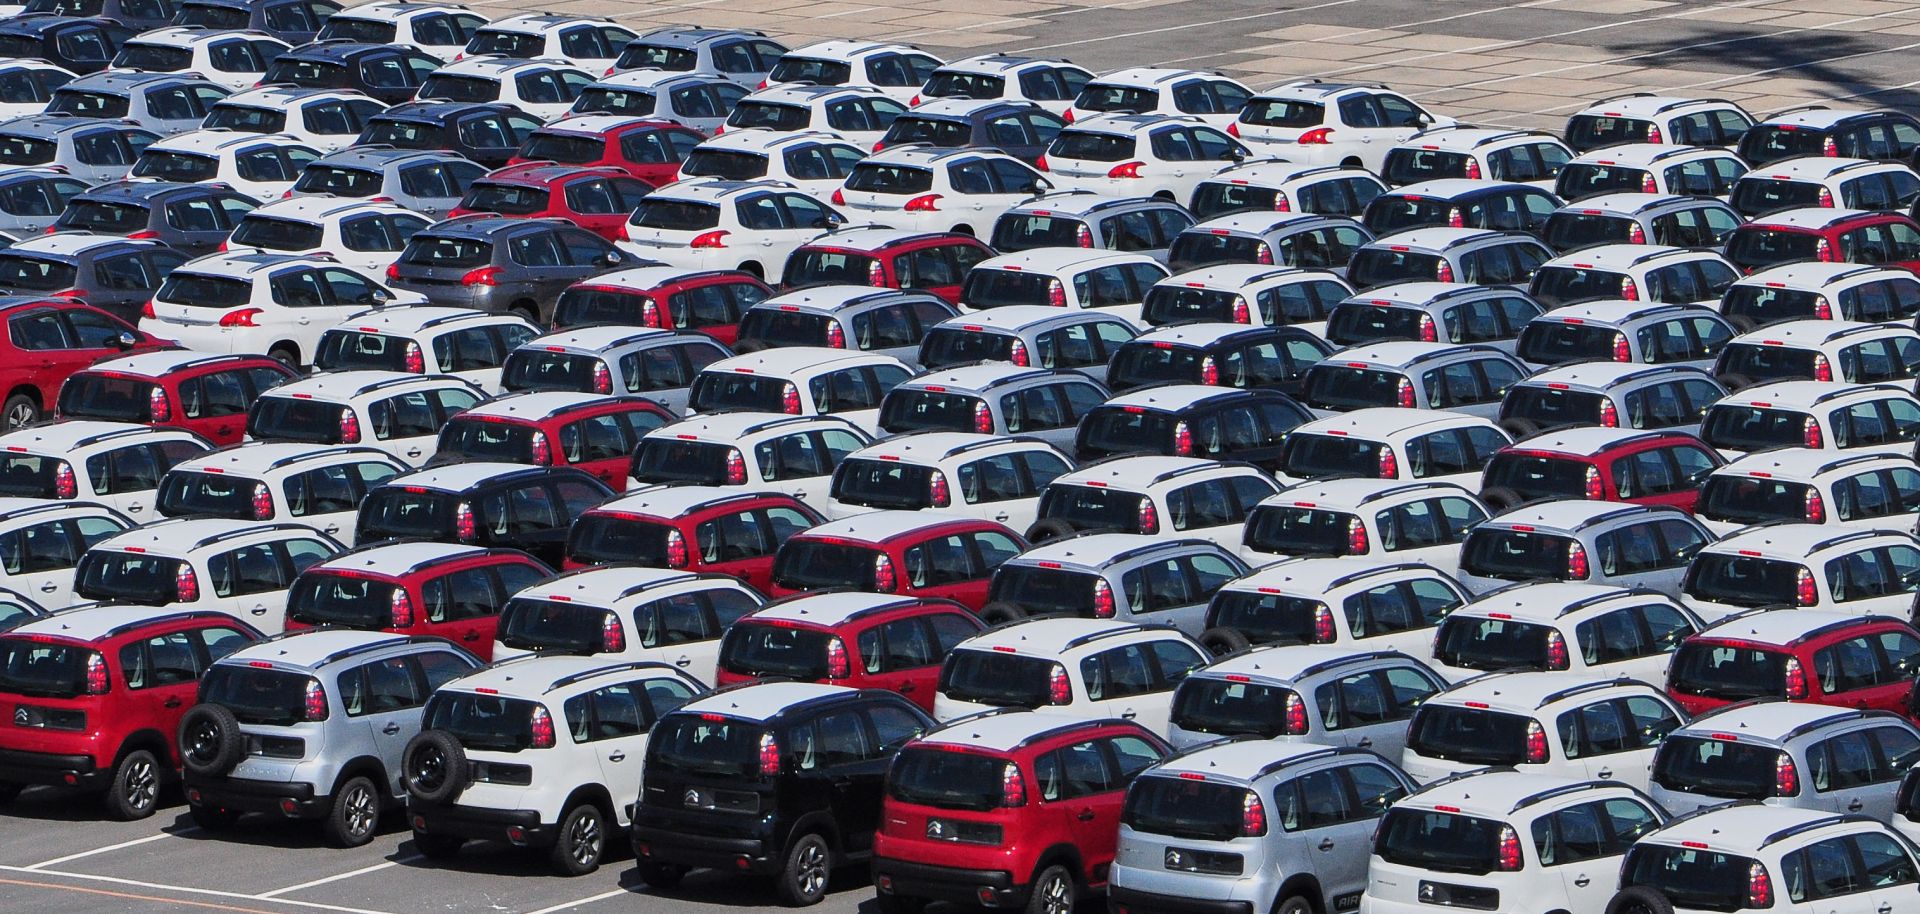 New Peugeot and Citroen cars await shipment on the pier in Rio de Janeiro, Brazil, in February 2017.